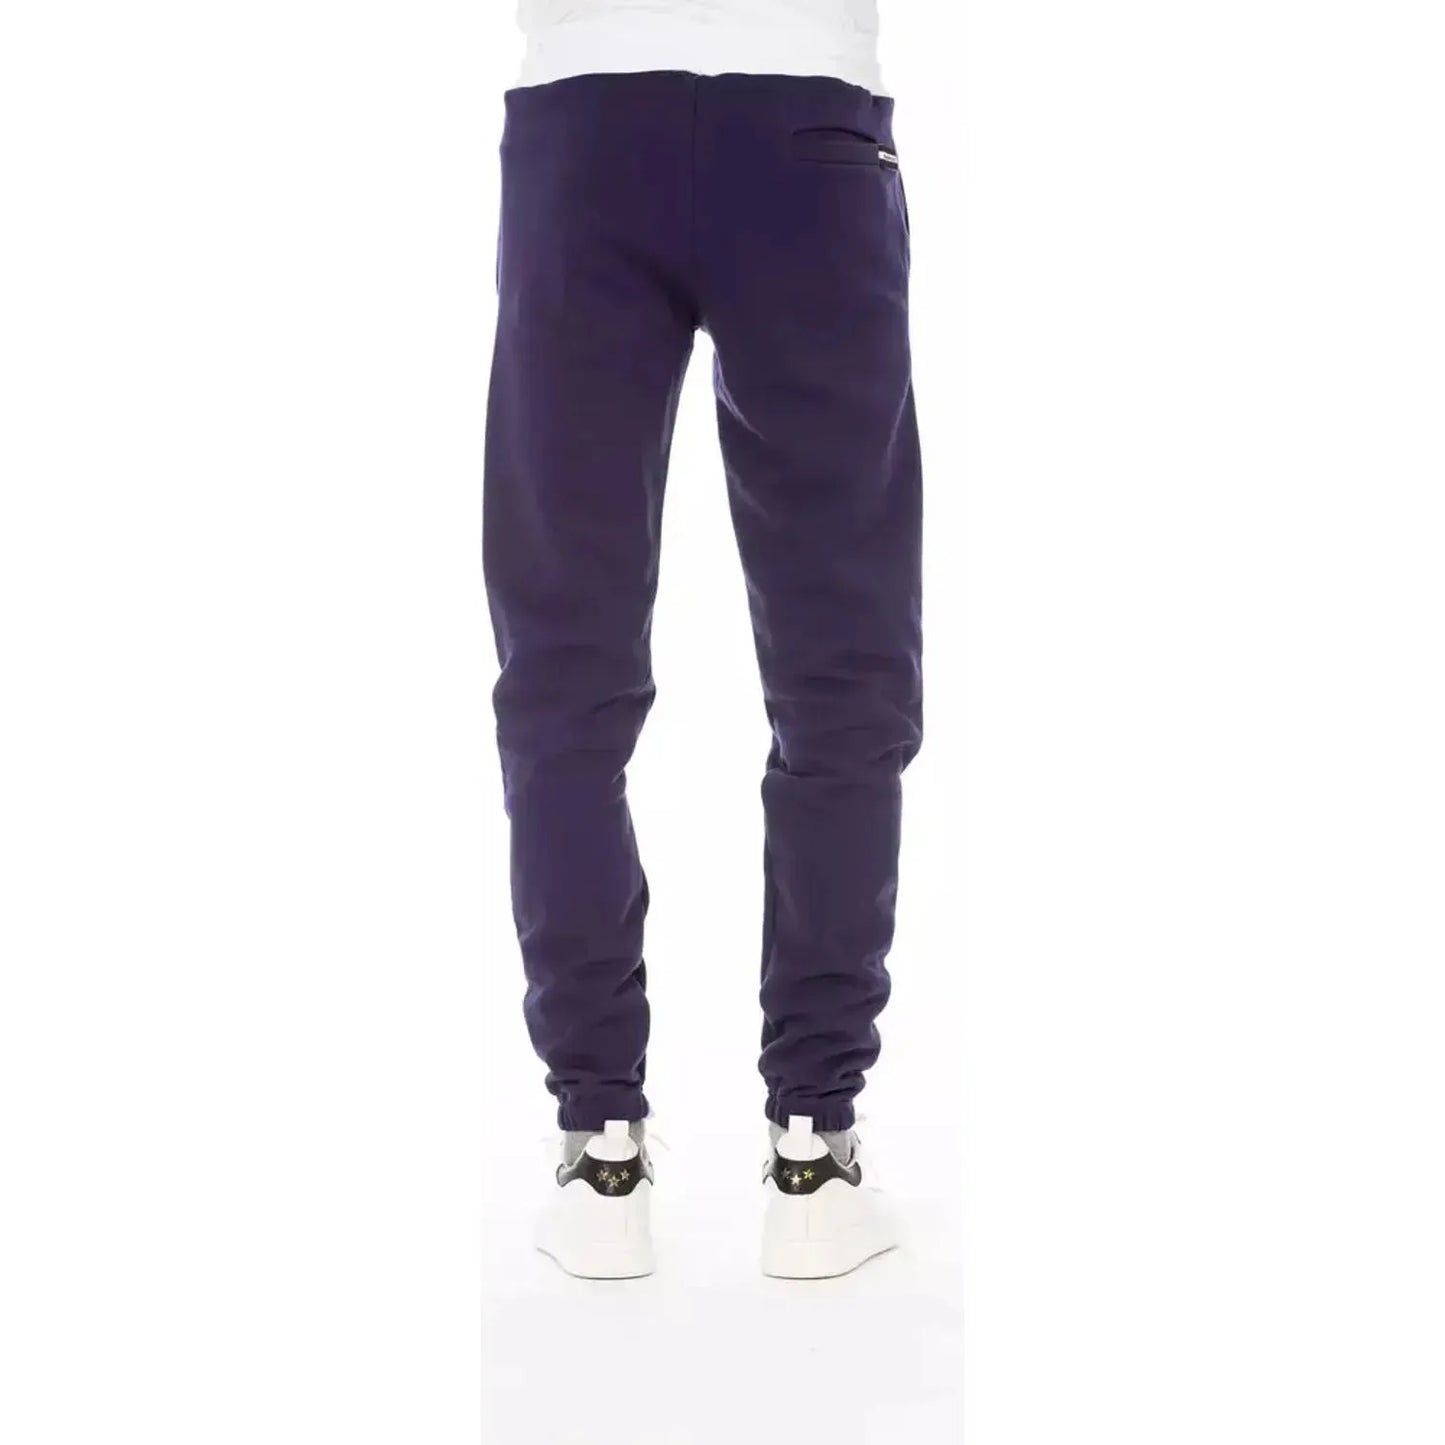 Baldinini Trend Chic Purple Fleece Sport Pants - Elevate Your Style violet-cotton-jeans-pant-2 product-22492-652413818-21-87000736-df2.webp